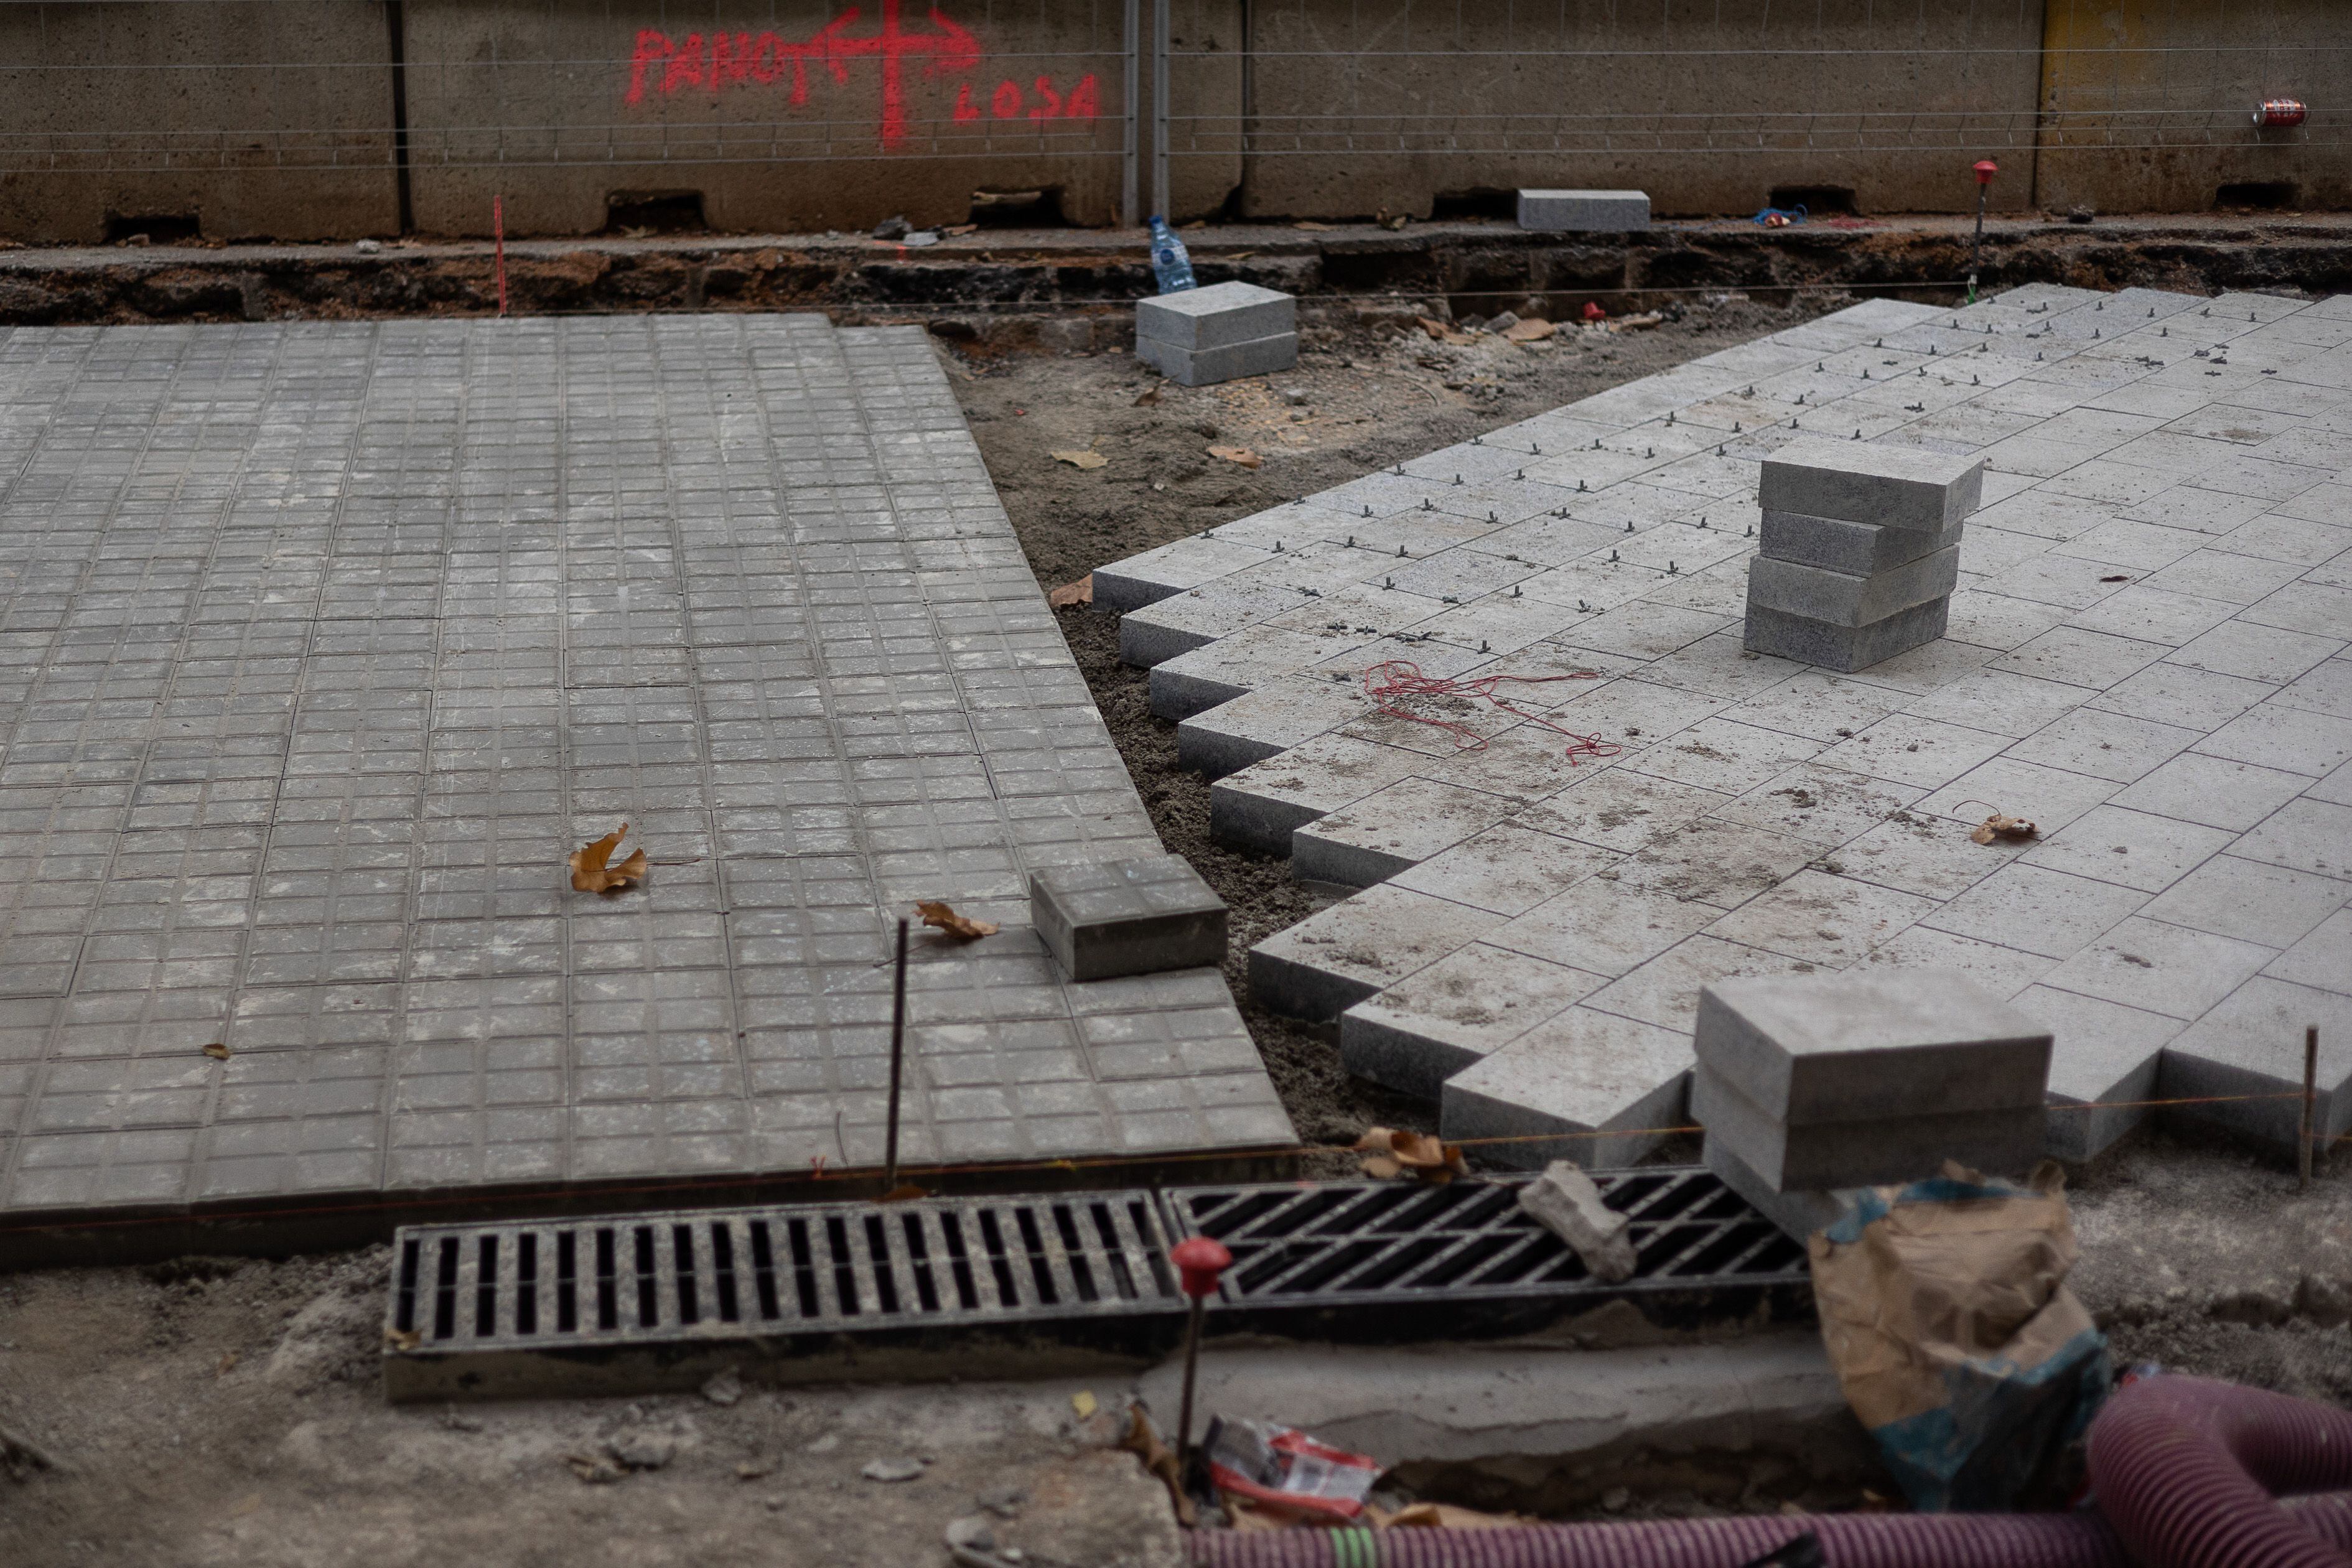 El pavimento que estrenarán los 'ejes verdes' de la Superilla de Barcelona incluye piezas rectangulares de granito colocadas al bies que requieren pericia al colocarlas, explican los obreros.